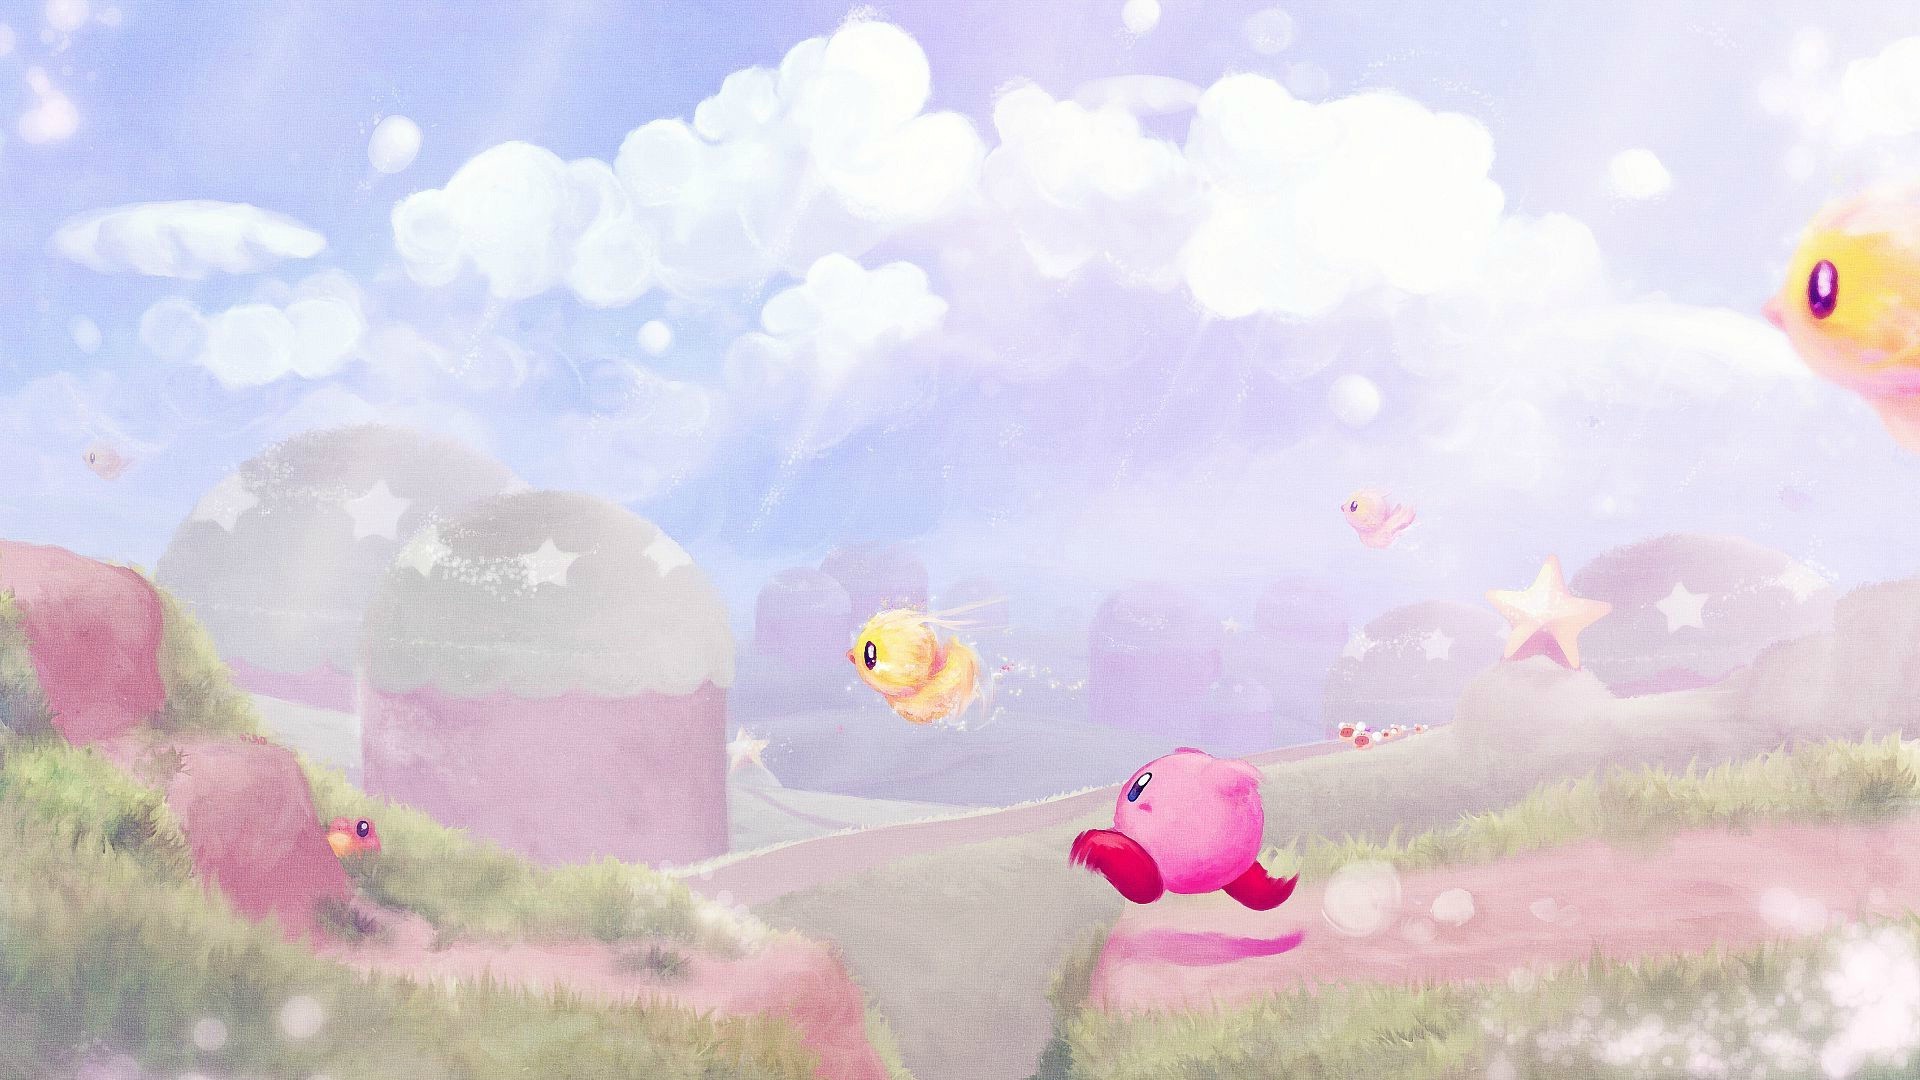 Với độ phân giải cao, hình ảnh Kirby HD là một điều tuyệt vời và đáng để xem. Các chi tiết tuyệt đẹp và màu sắc rực rỡ tạo nên một trải nghiệm tuyệt vời khi xem bức ảnh này.